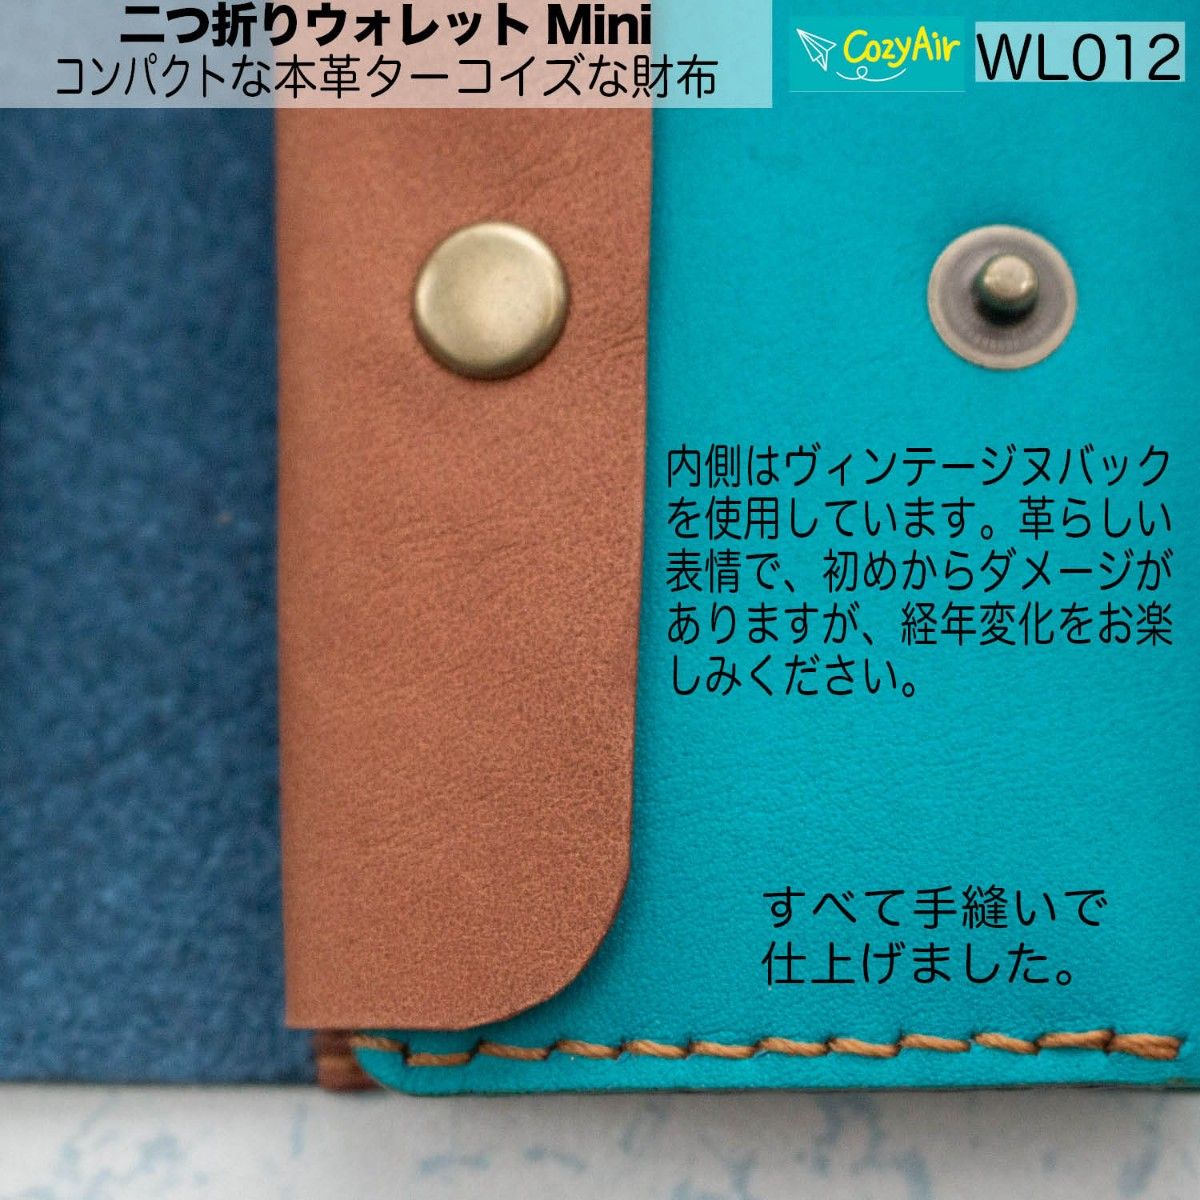 WL012 コンパクトな二つ折りウォレットMini  本革ターコイズな財布